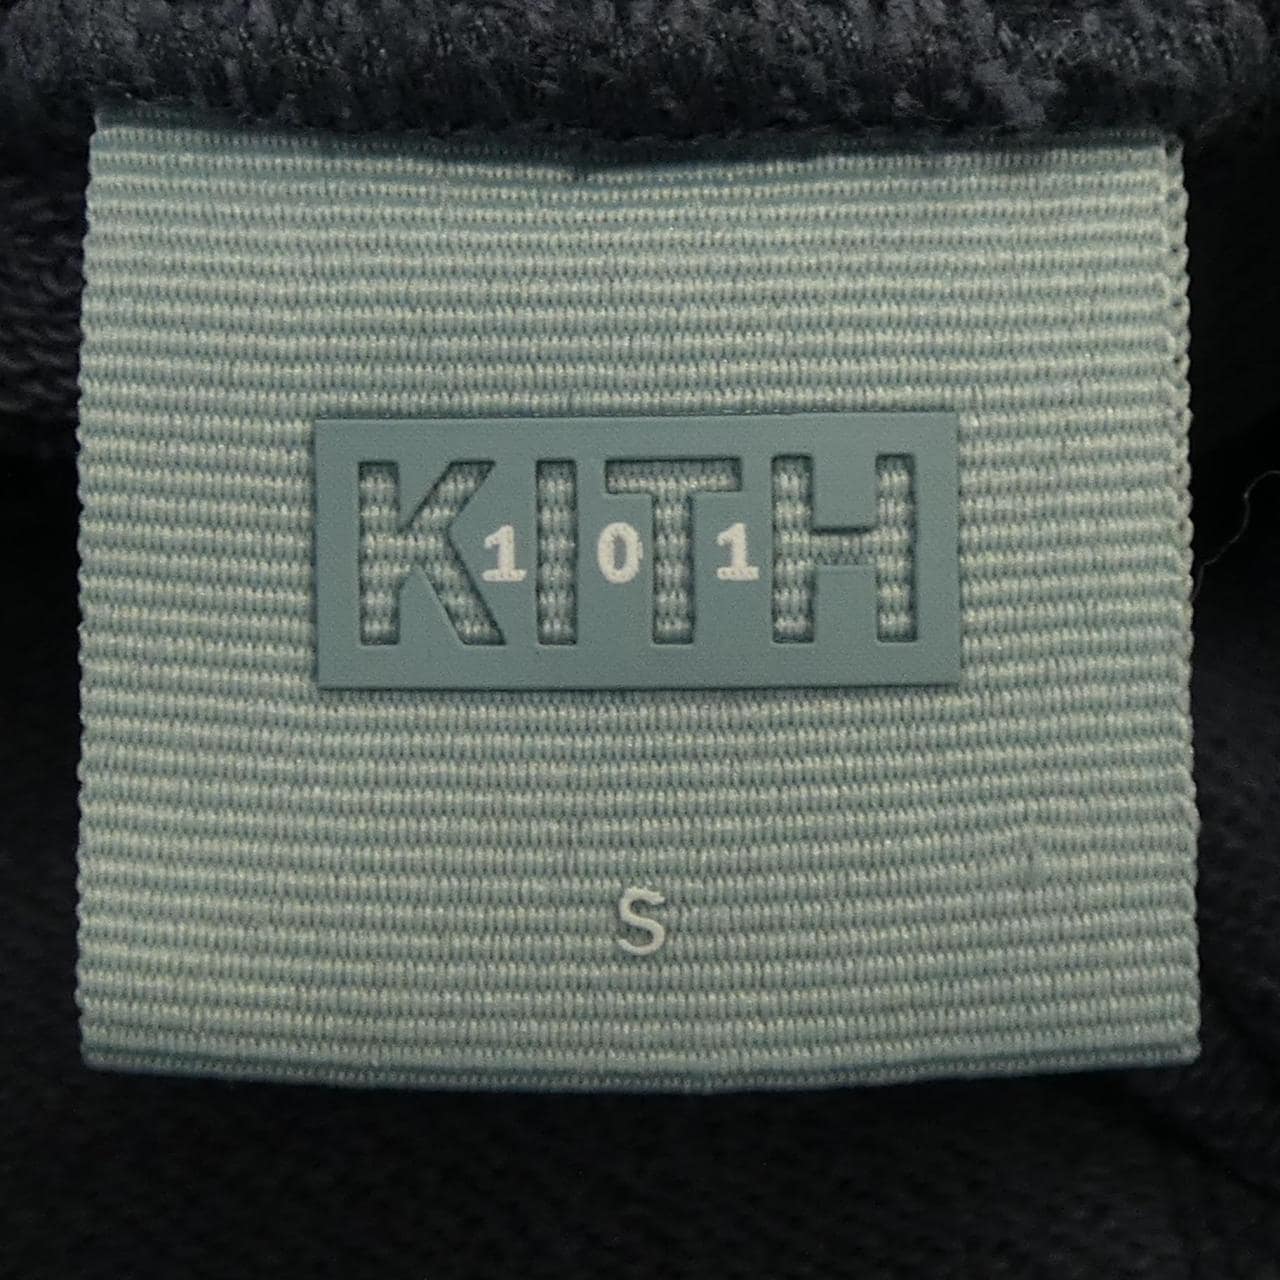 Kith shorts